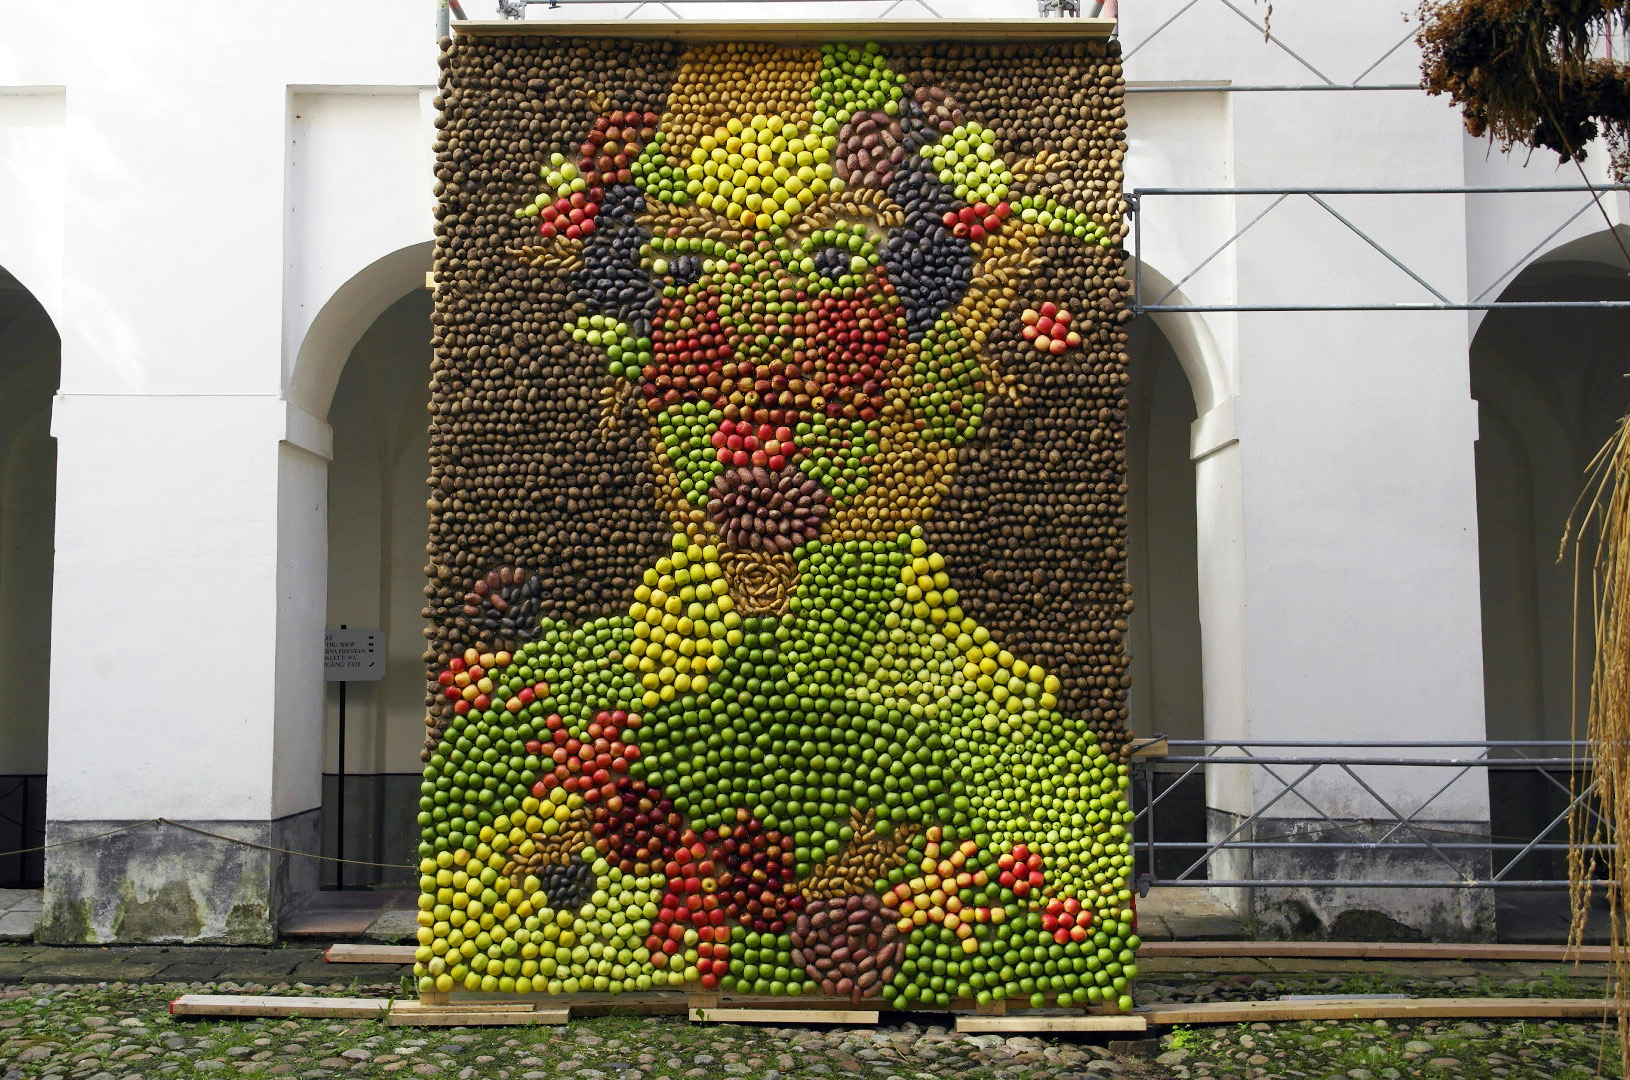 Stor bild föreställande en mansfigur gjord av potatis och äpplen i olika färger. 